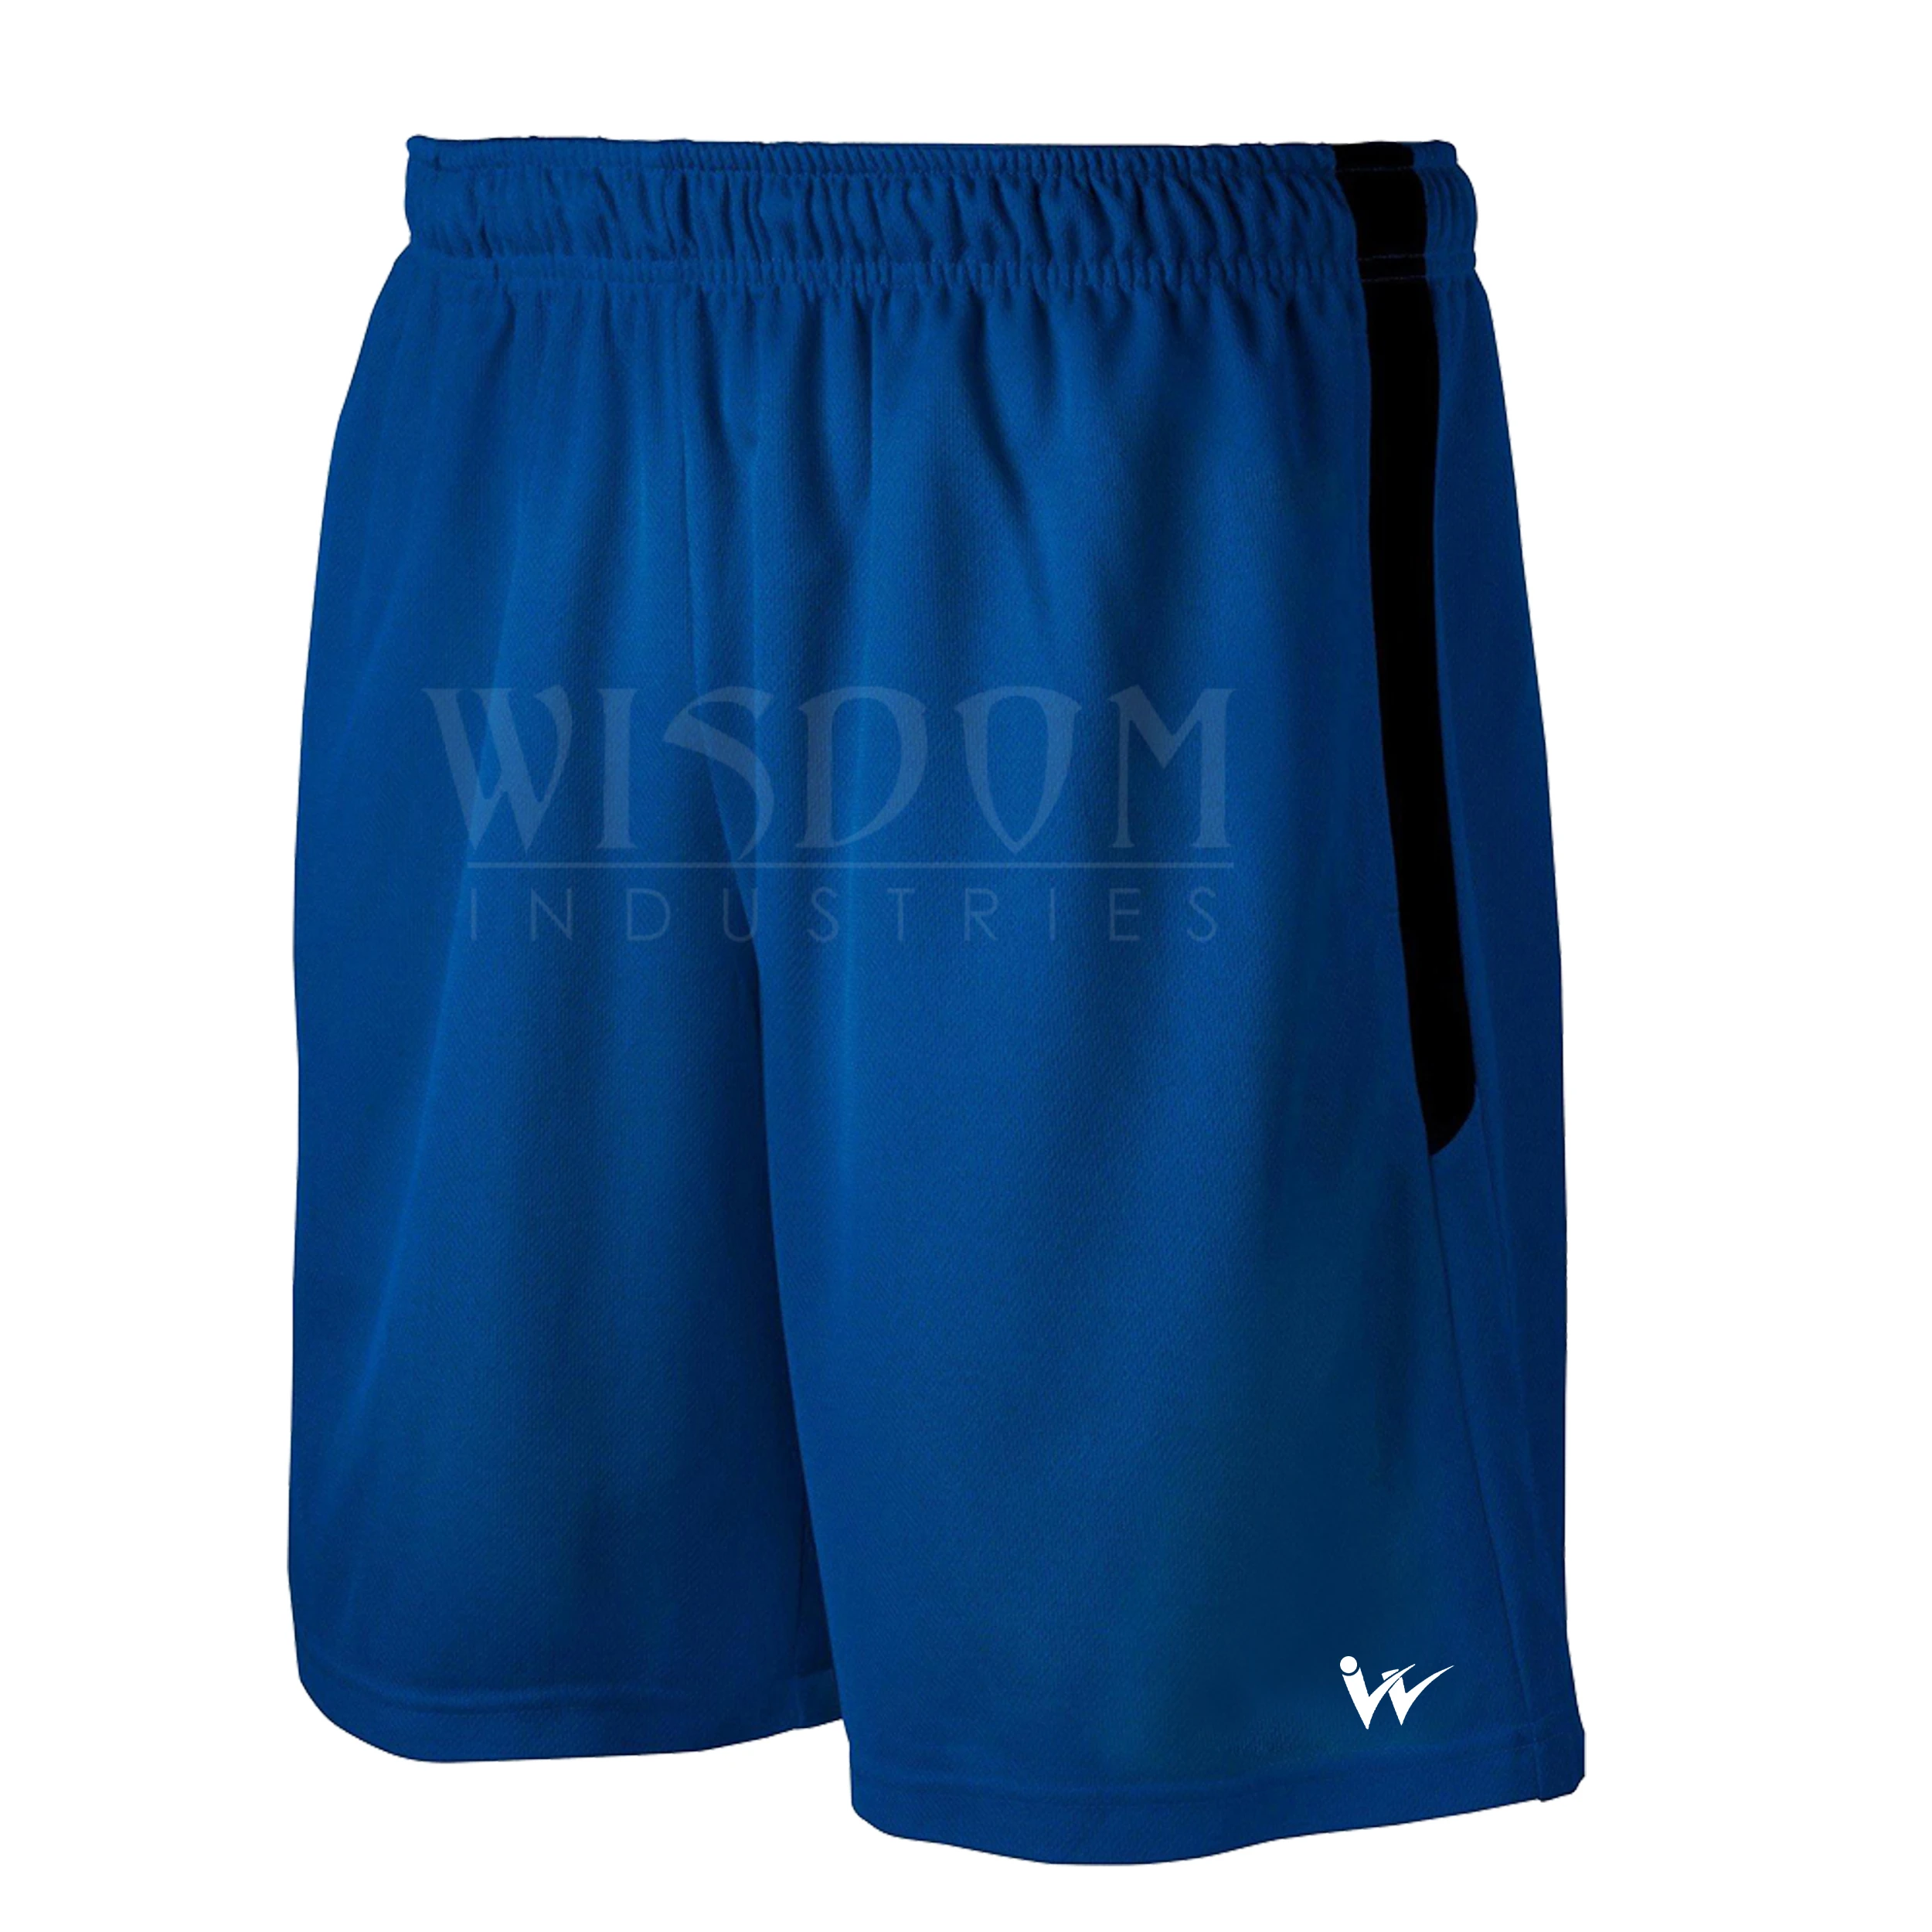 Custom Shorts For Men